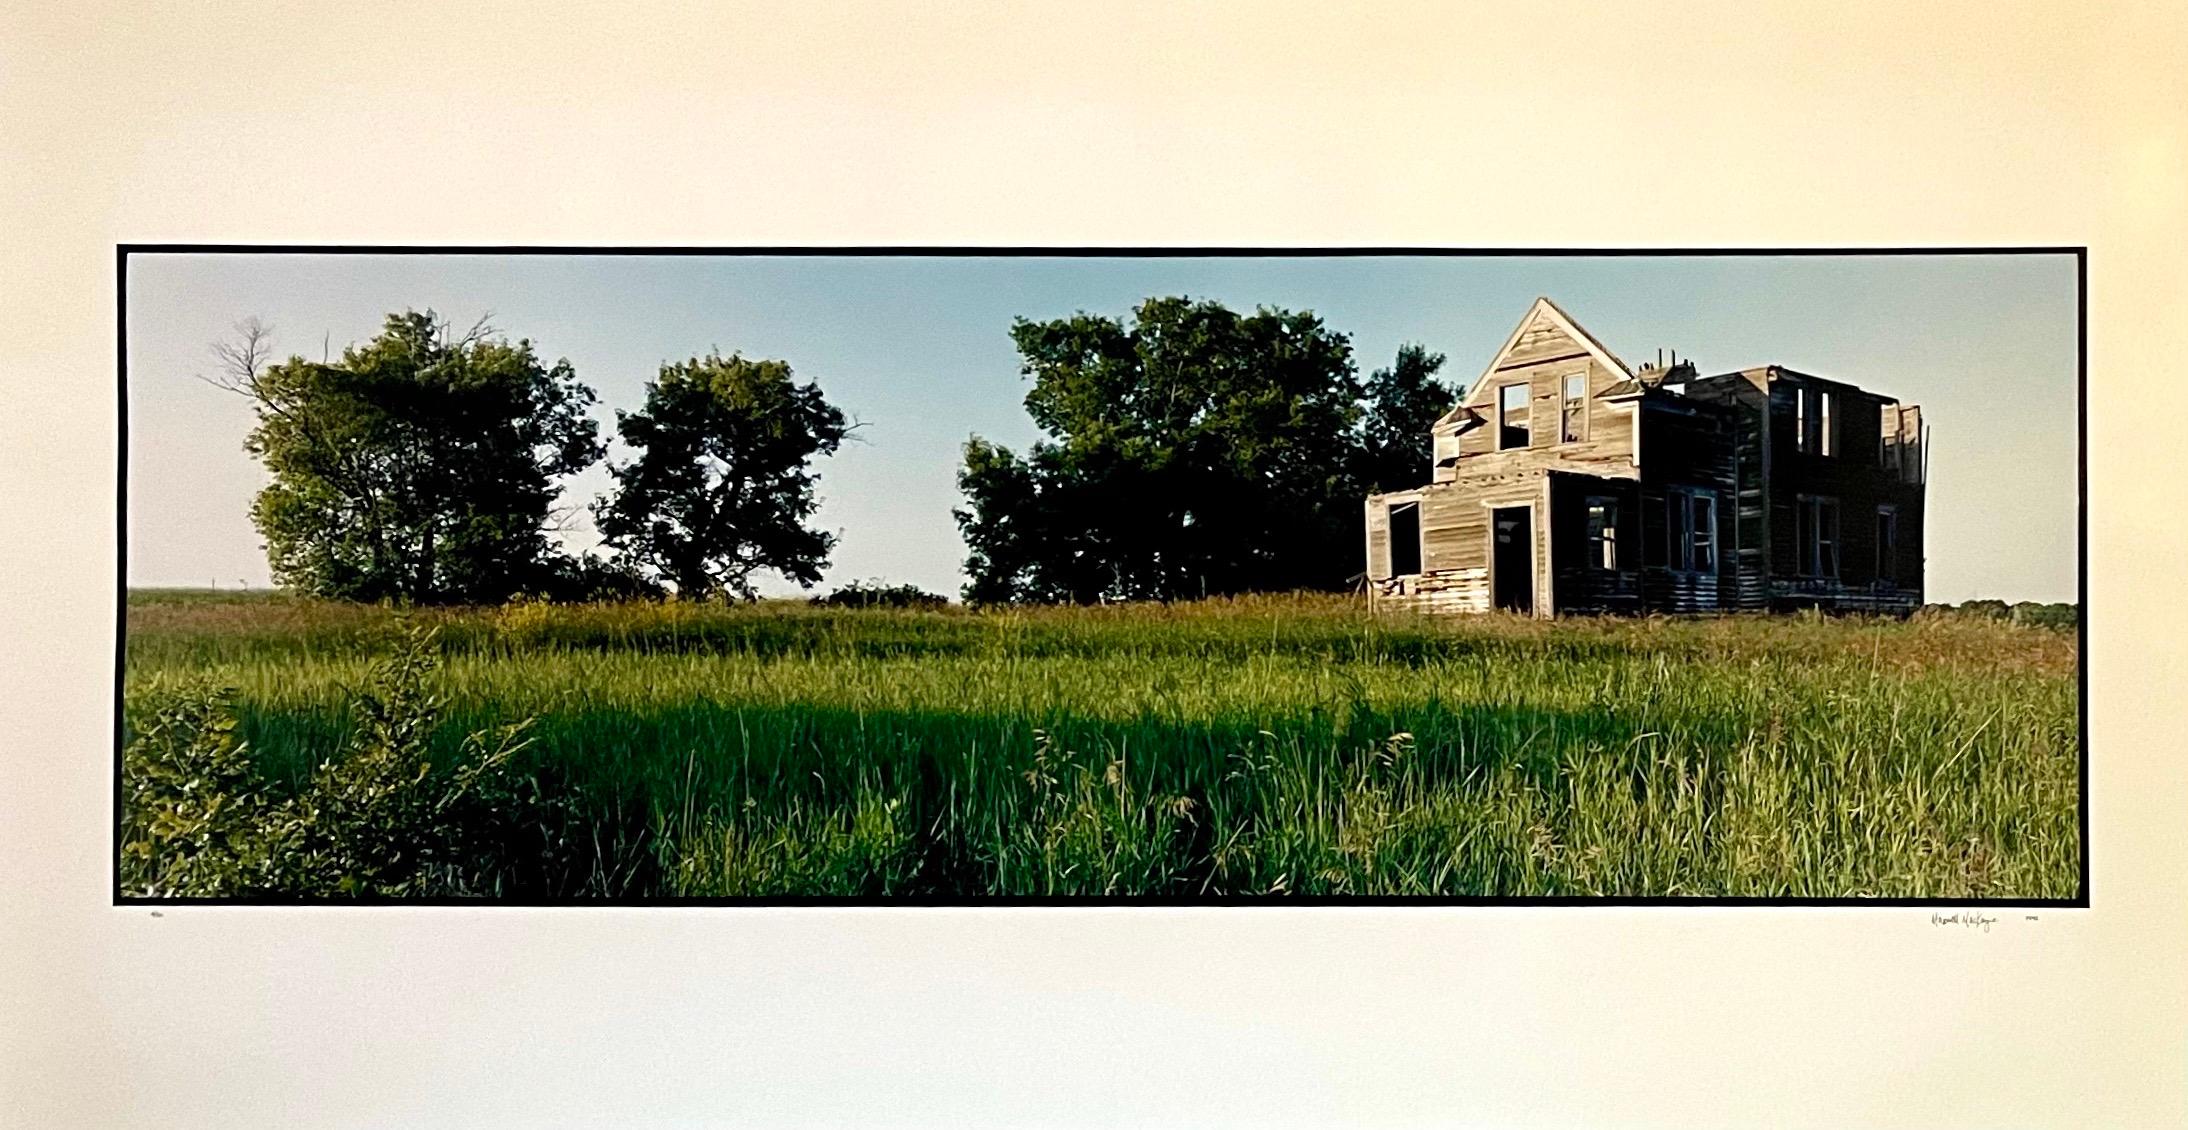 Color Photograph Maxwell Mackenzie - Vieux paysage d'été de grange, grande photographie couleur vintage en panneau, signée